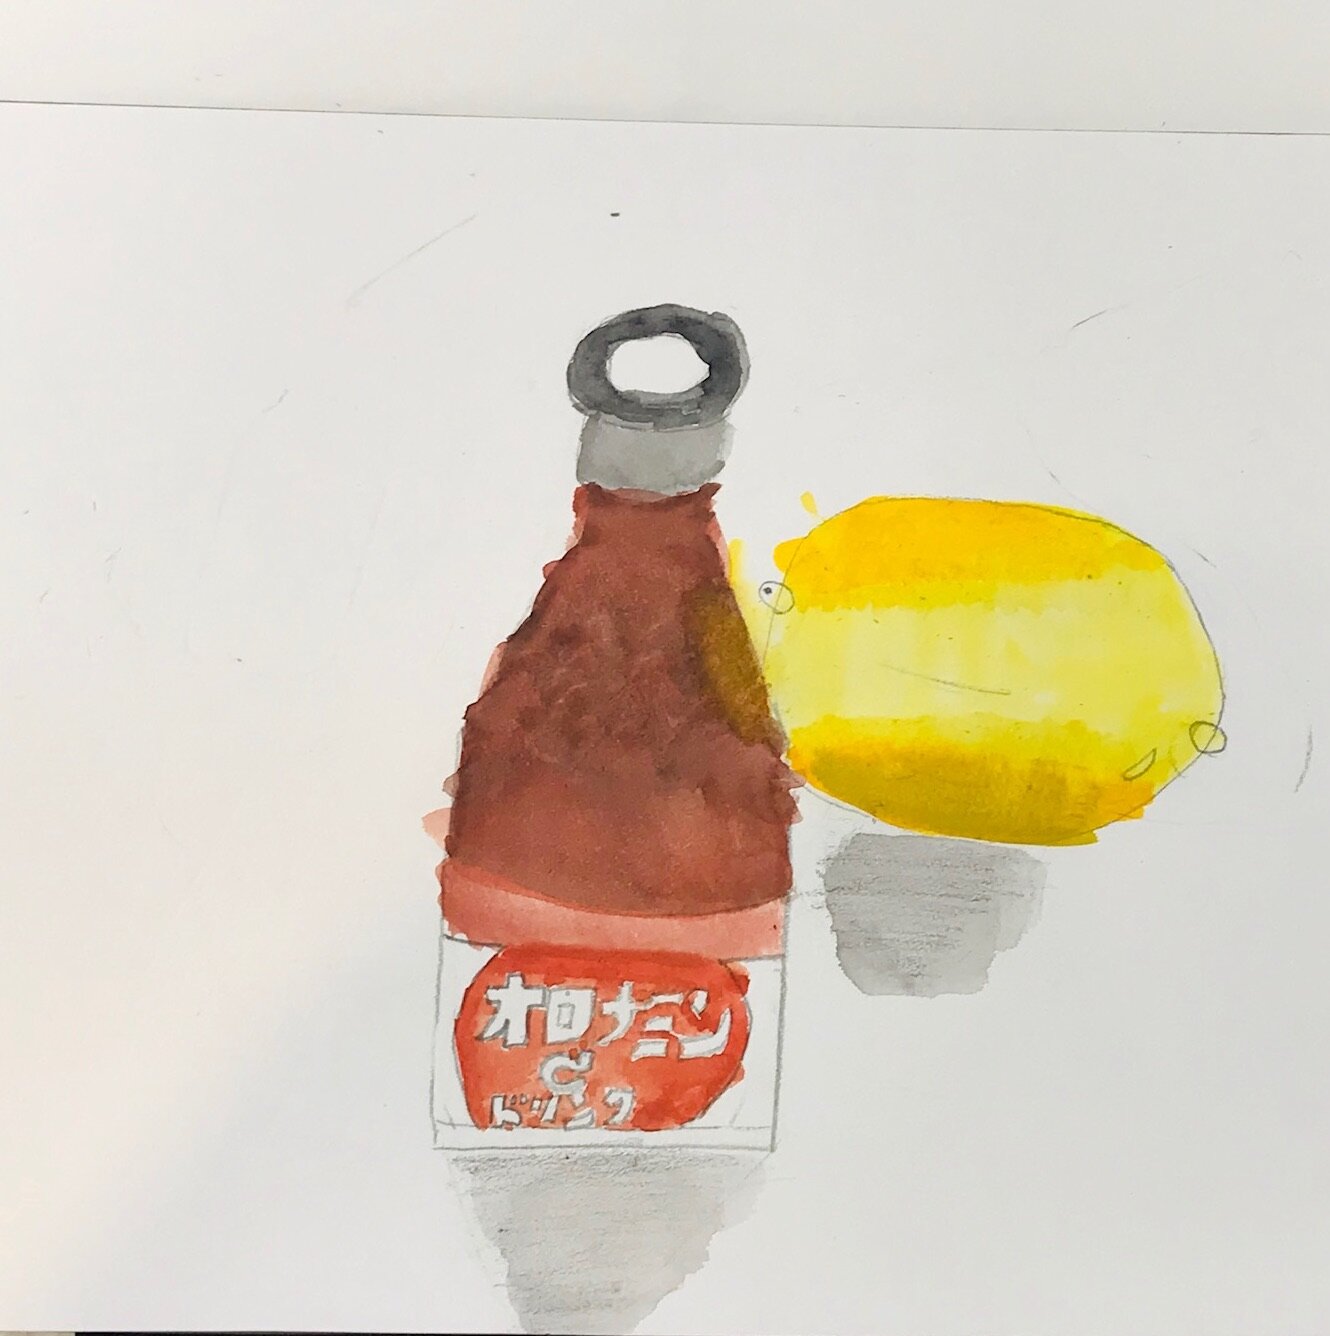 絵画教室ブログ 水彩絵の具のはなし 絵画教室ブログ ブログ 名古屋市千種区 基礎のデッサン 水彩画から洋画 油彩画 日本画まで